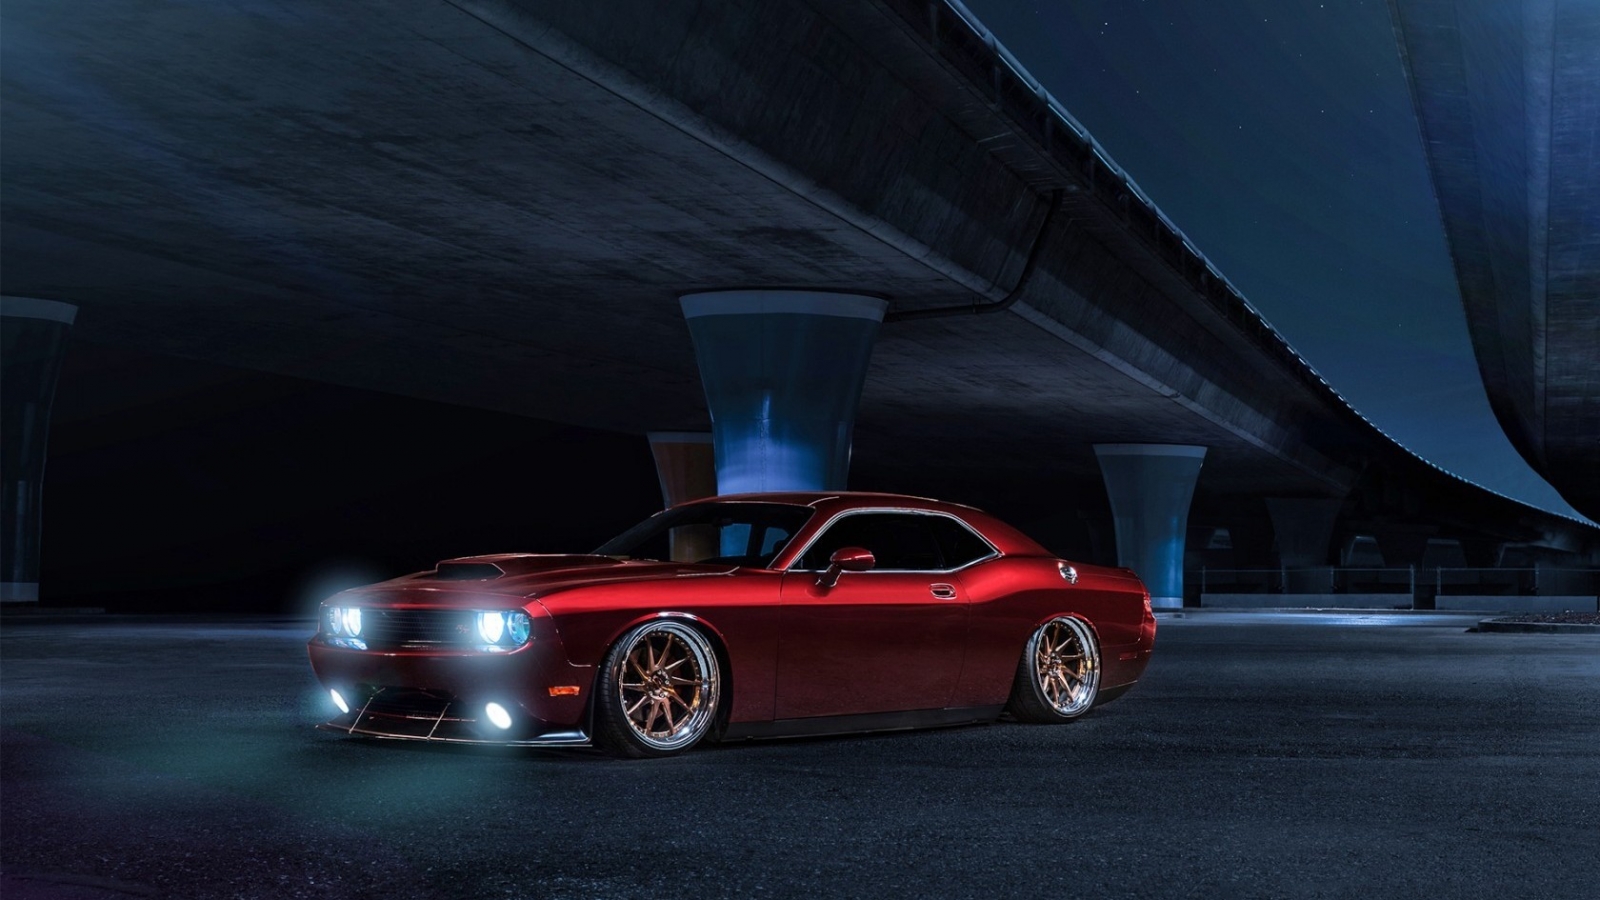 Red Dodge Challenger Avant Garde for 1600 x 900 HDTV resolution